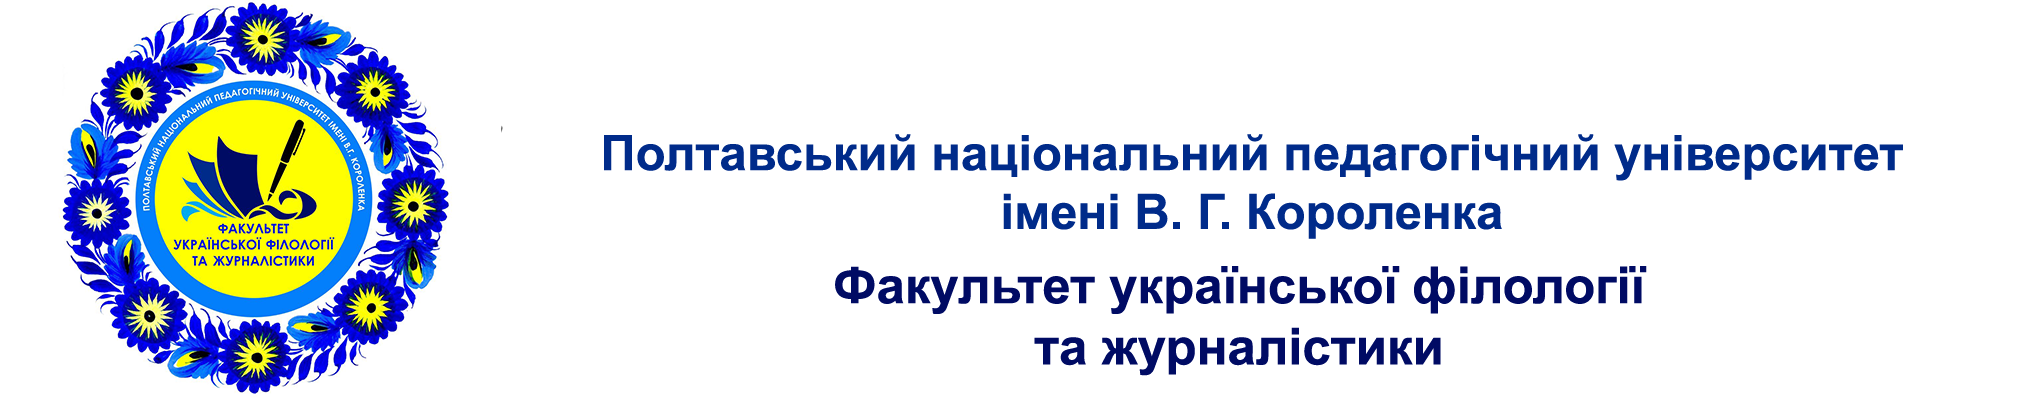 Факультет української філології та журналістики